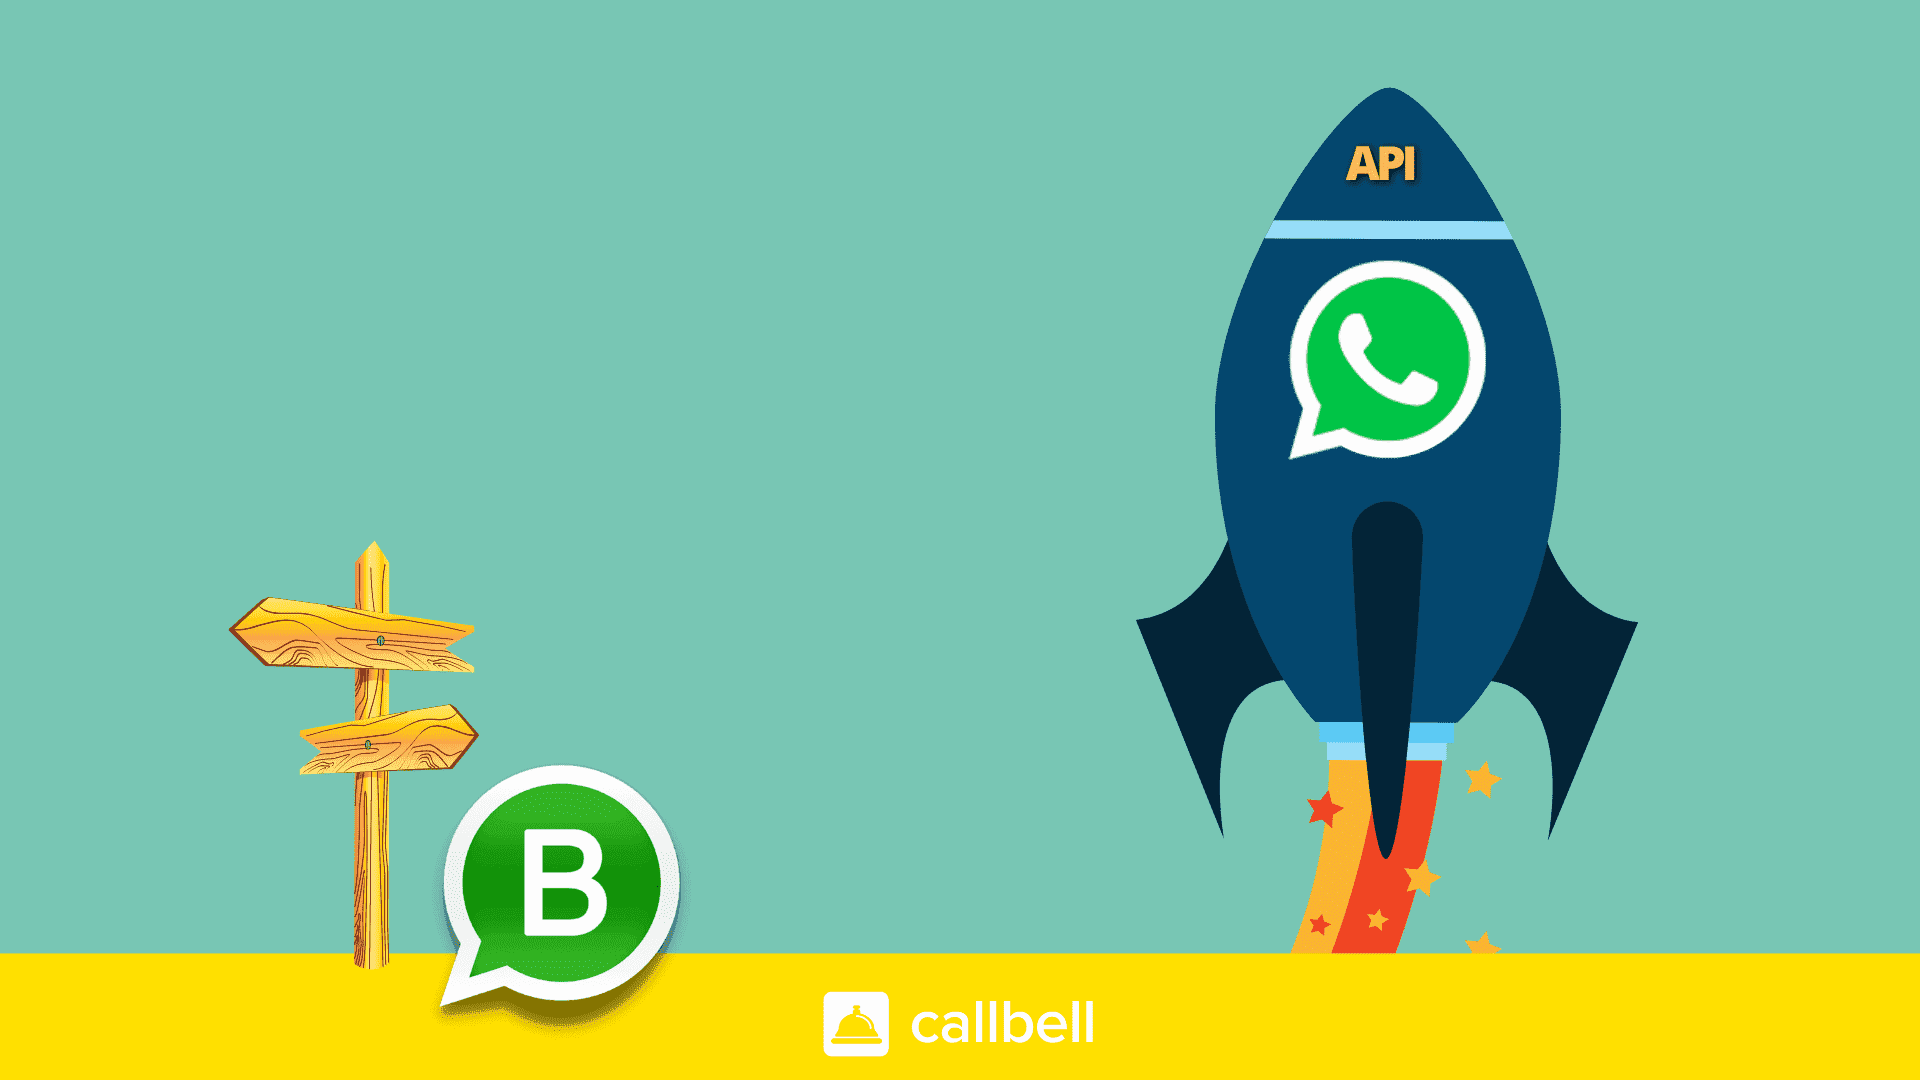 Comment créer une marque qui vend plus avec WhatsApp Business